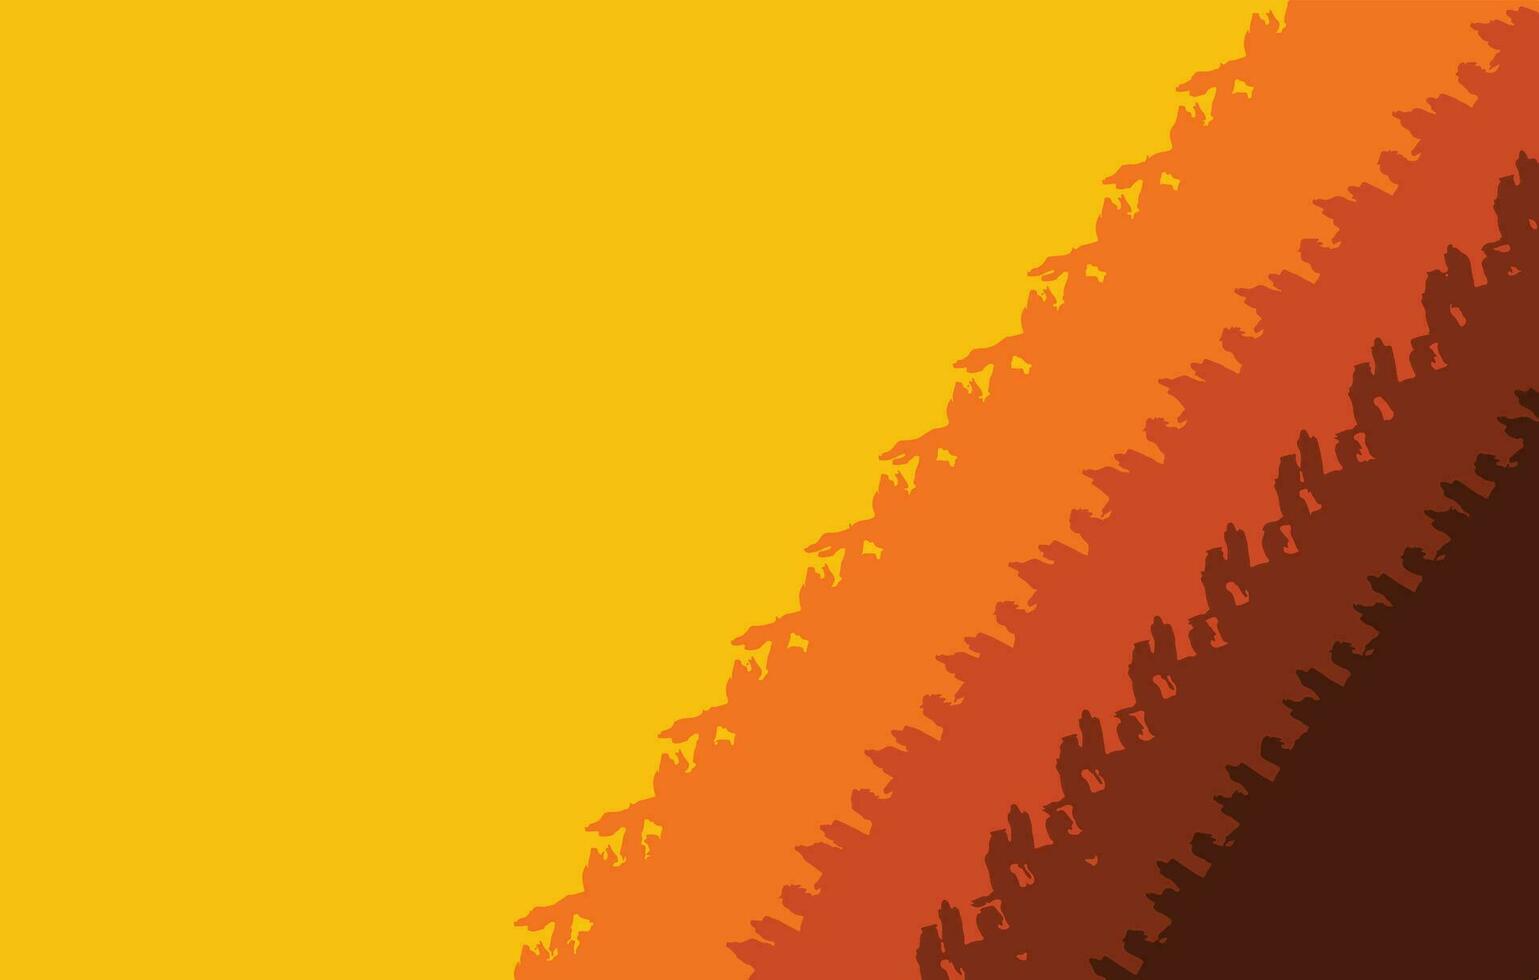 amarillo, naranja, rojo, y marrón resumen cepillo carrera vector antecedentes aislado en horizontal proporción modelo. sencillo plano fondo de pantalla con vacío Copiar espacio.